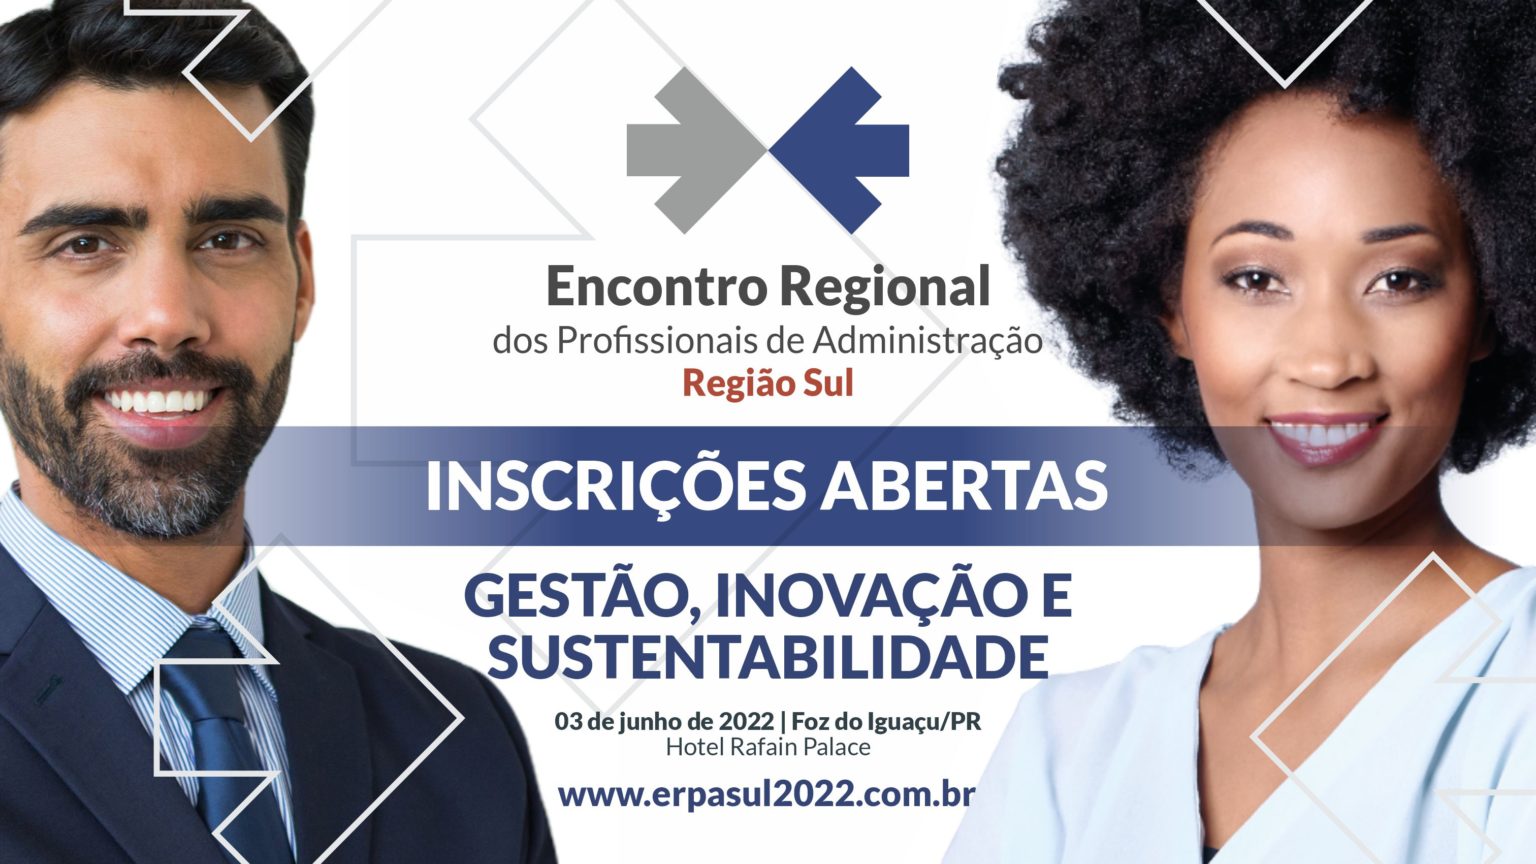 ERPA 2022 debate Gestão, Inovação e Sustentabilidade em junho